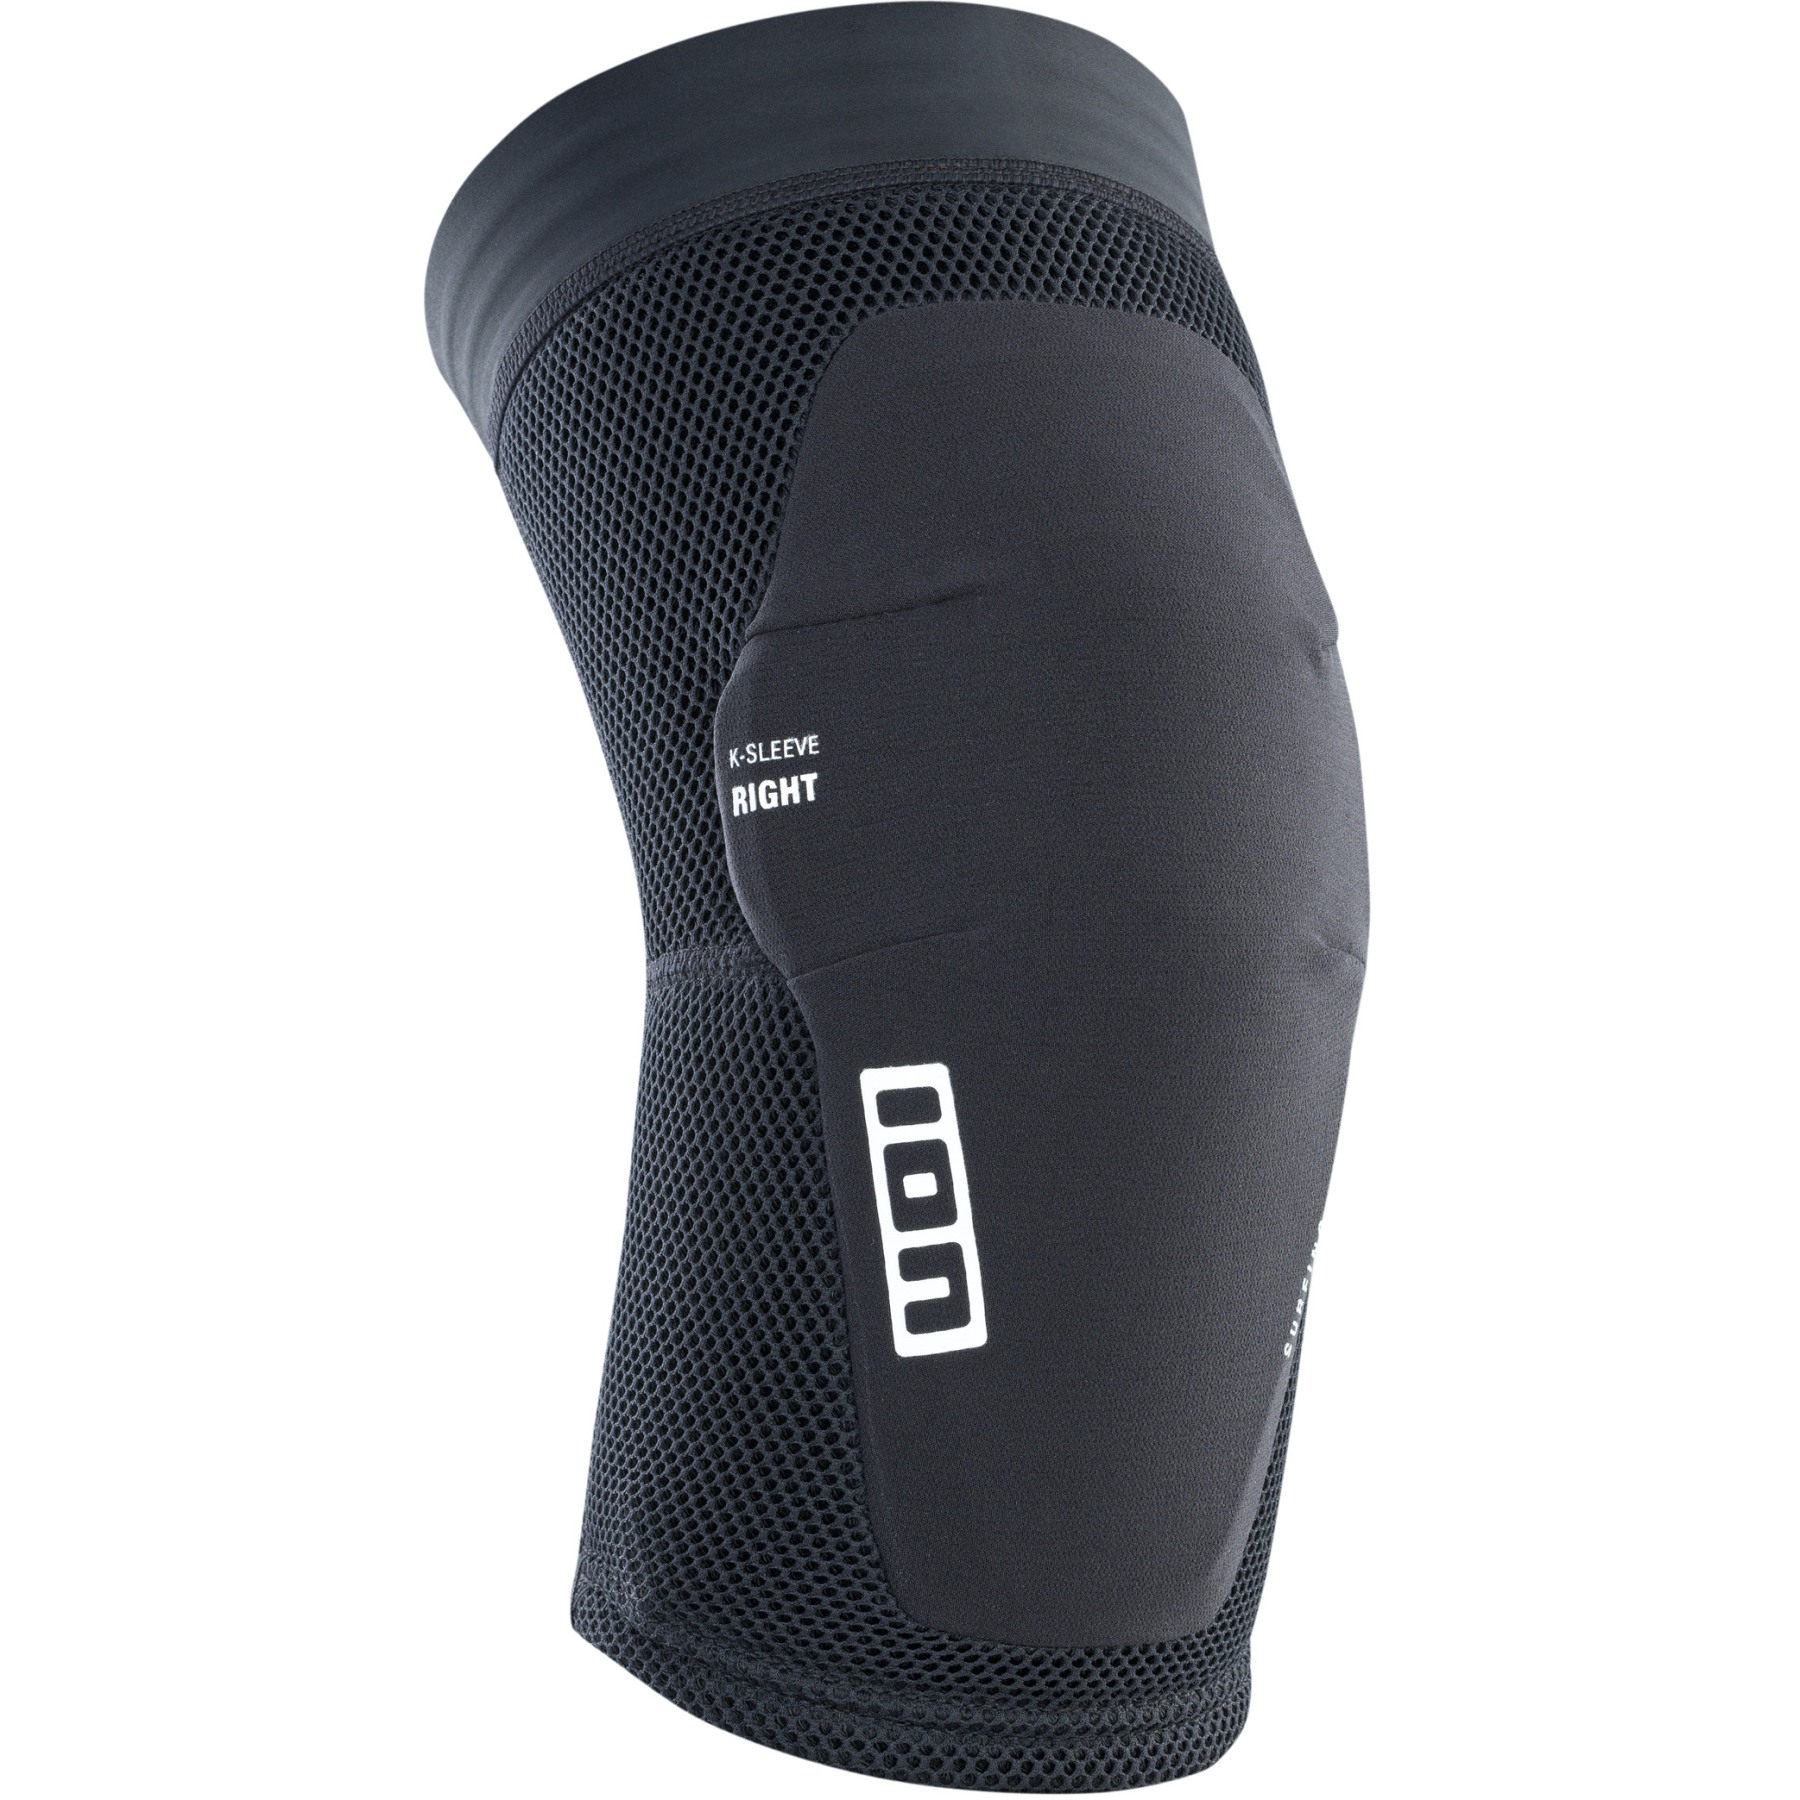 Productfoto van ION Bike Protection K-Sleeve Kniebeschermer - Zwart